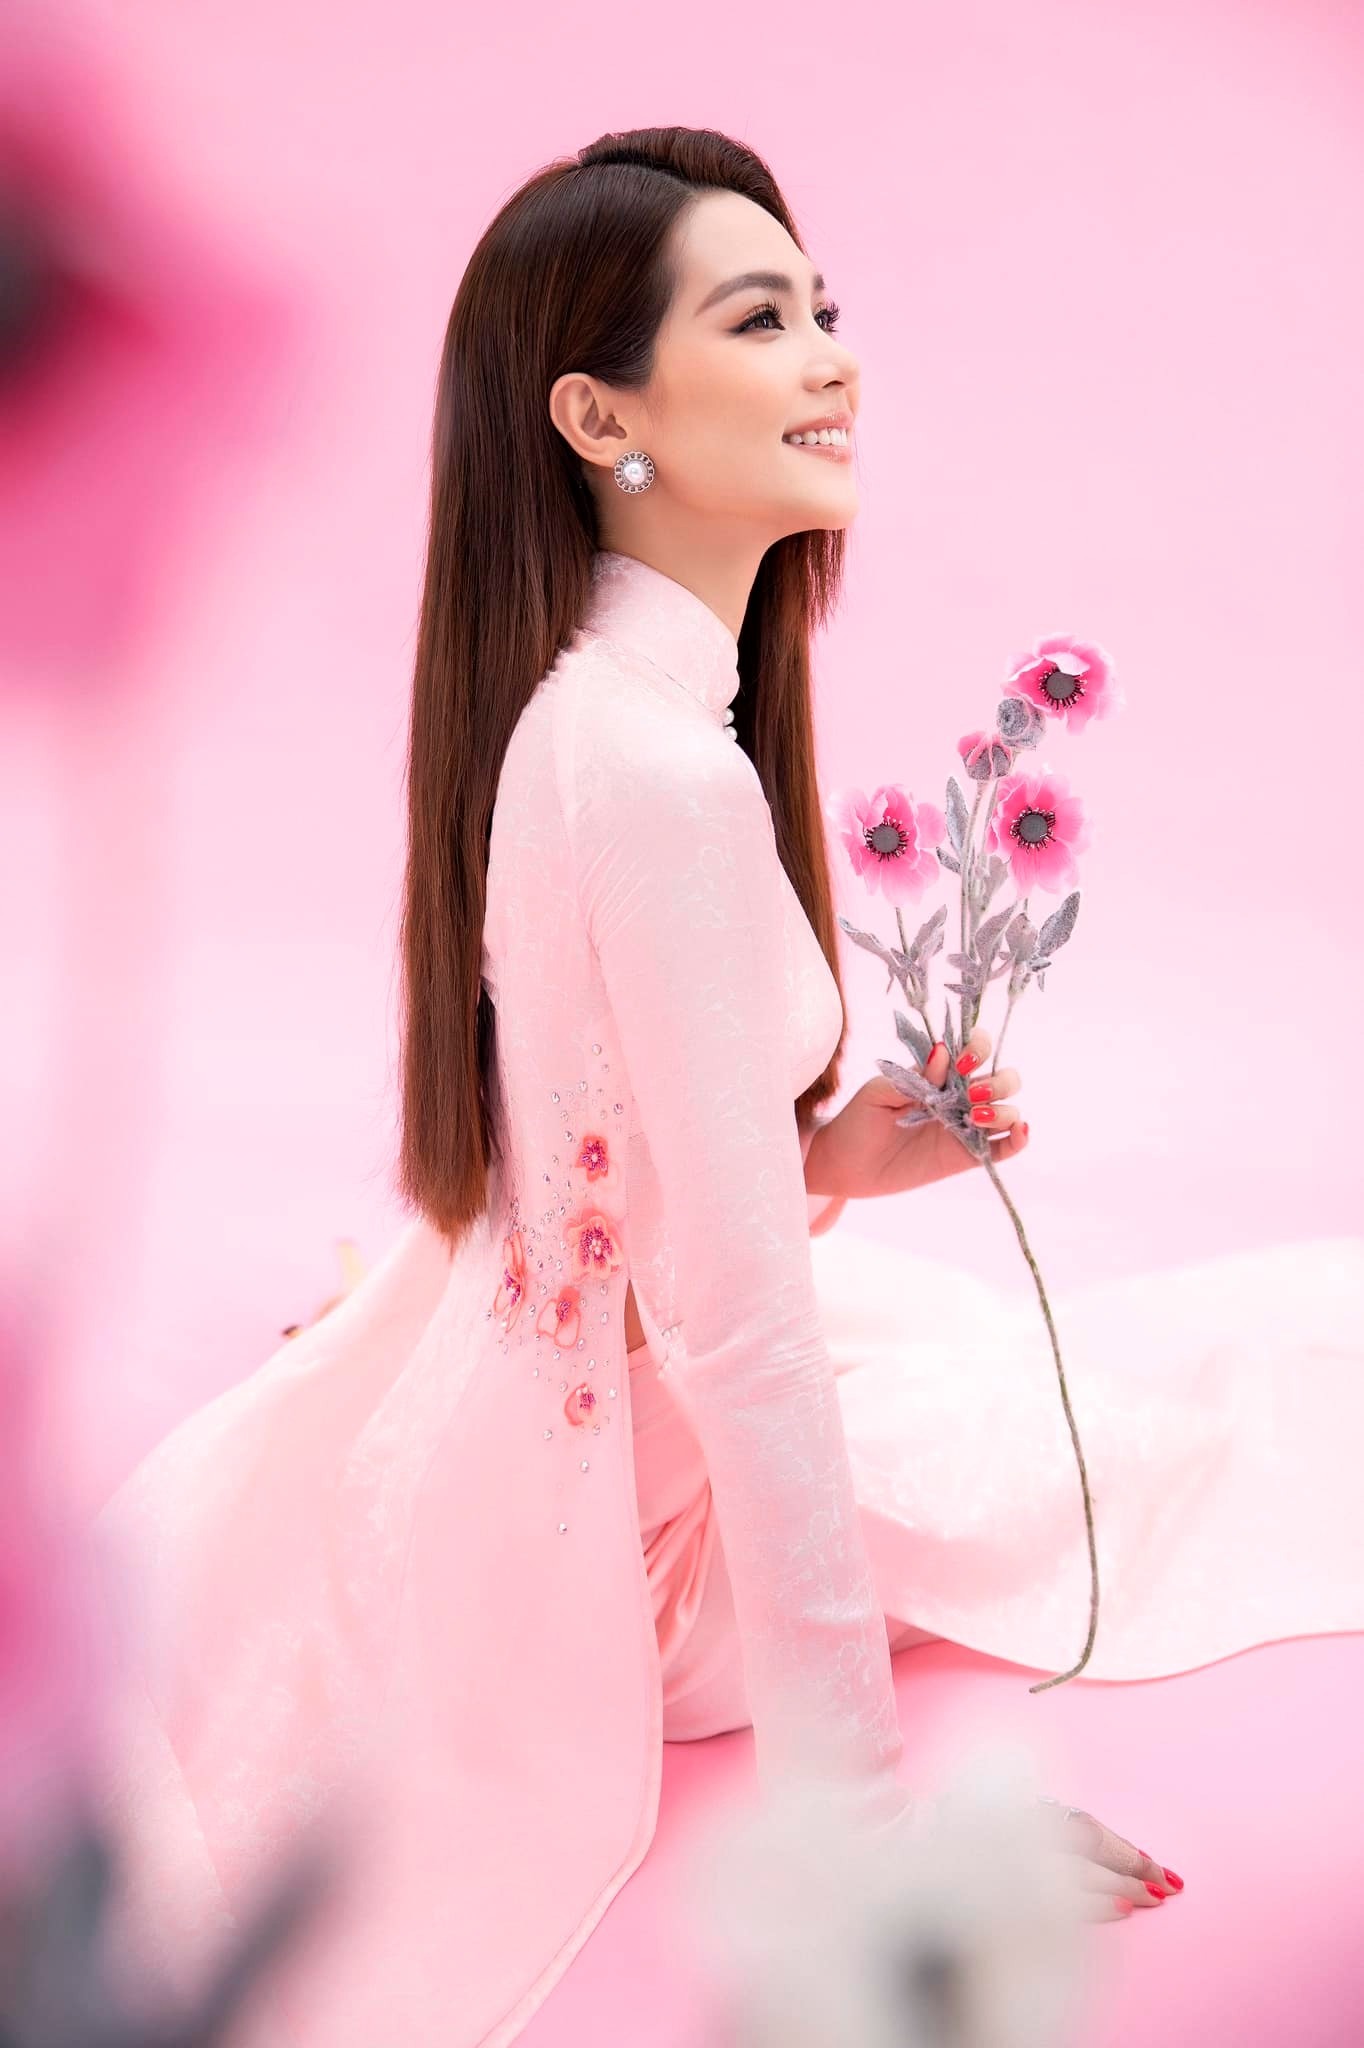 Hoa hậu Quốc tế 2019 và Á hậu Phương Anh cũng từng chọn áo dài của Ngô Nhật Huy để thực hiện một bộ ảnh kỷ niệm.Ảnh: NSCC.